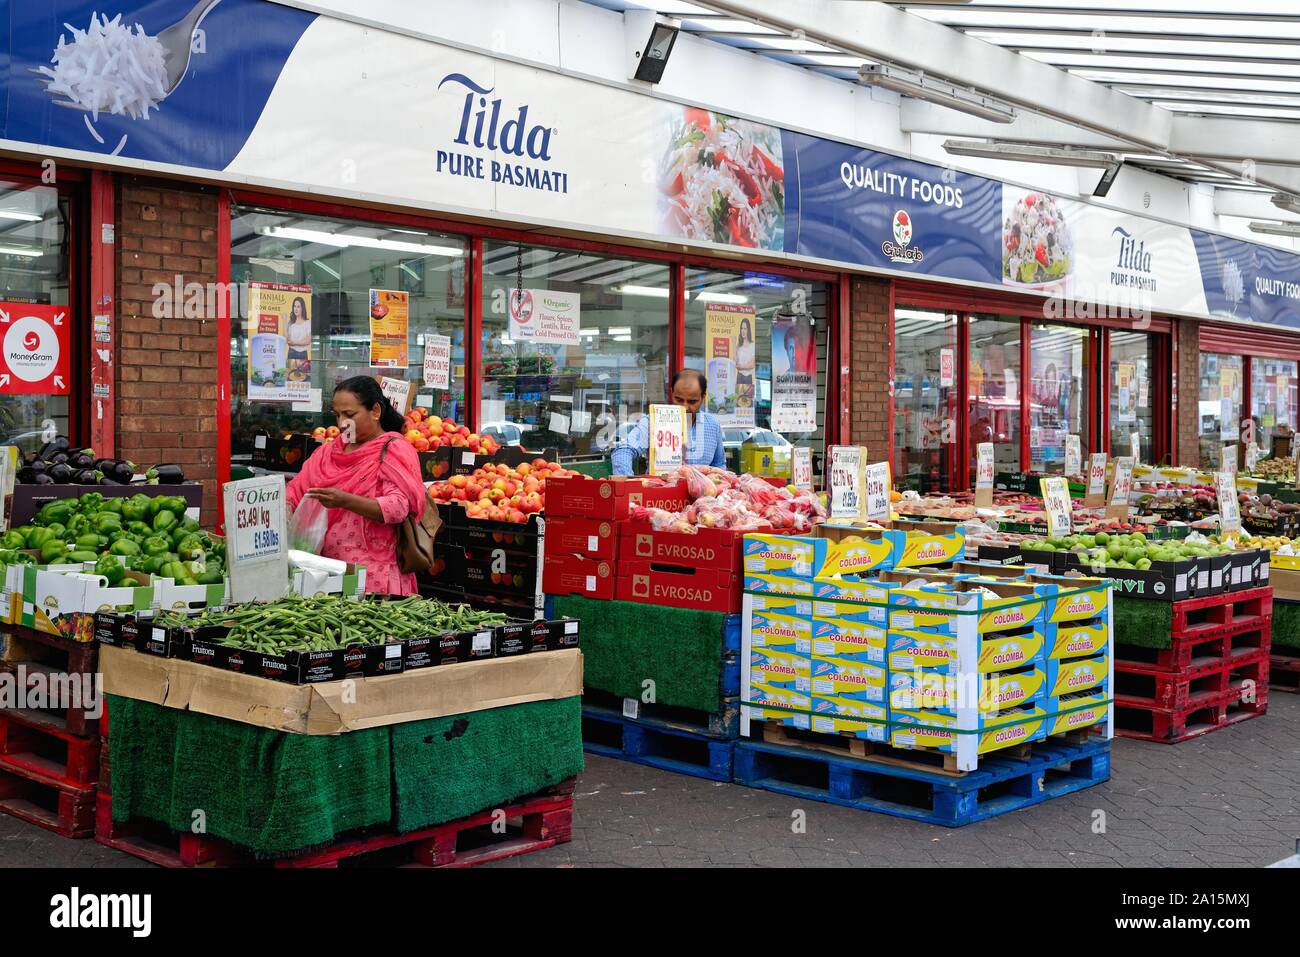 Una frutta e verdura aria aperta sul mercato South Street, Southall West London Inghilterra England Regno Unito Foto Stock